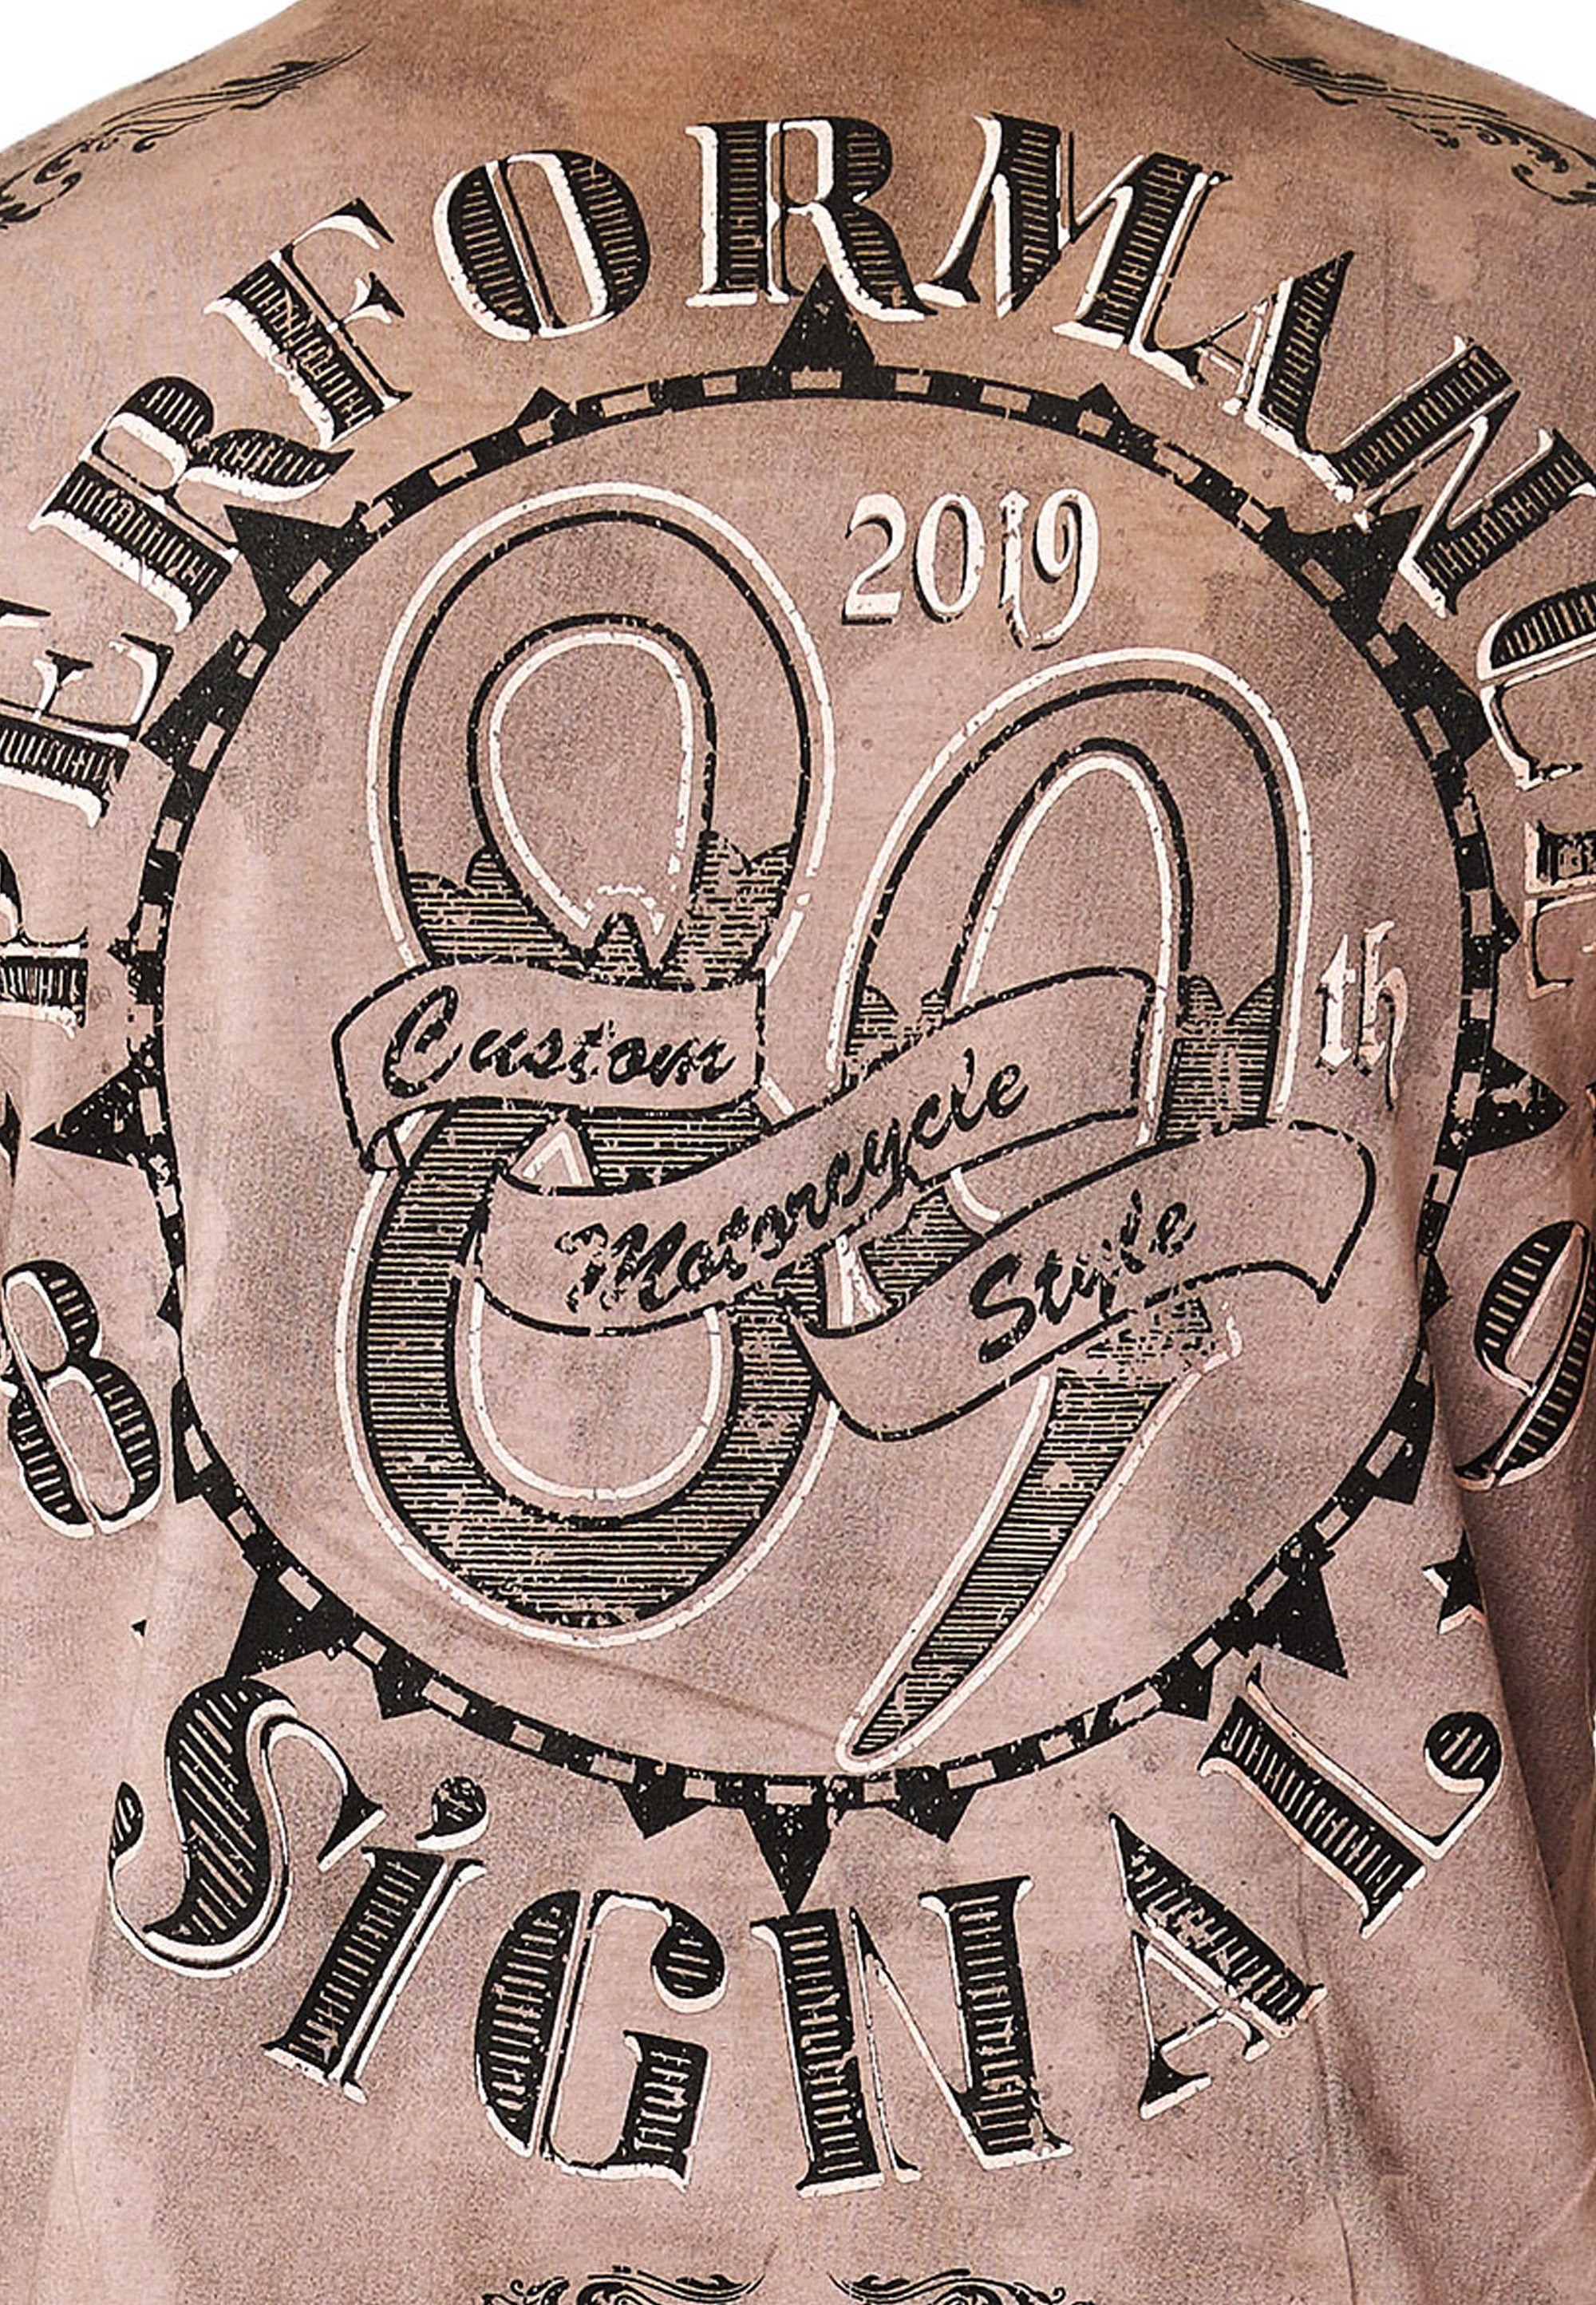 Rusty Neal T-Shirt, mit stylischem Totenkopf-Print ▷ für | BAUR